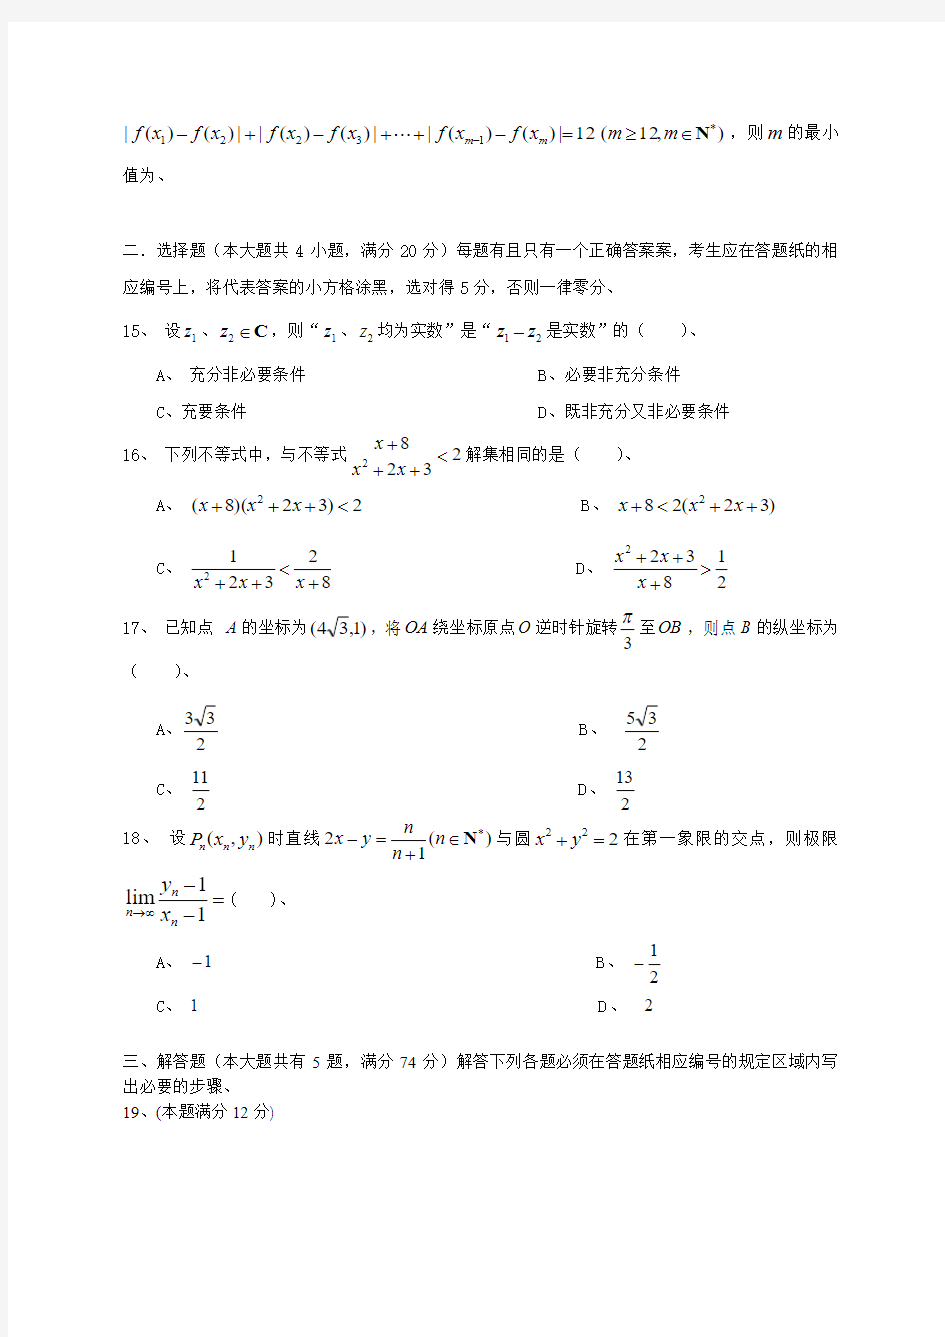 2015年全国高考文科数学试题及答案-上海卷